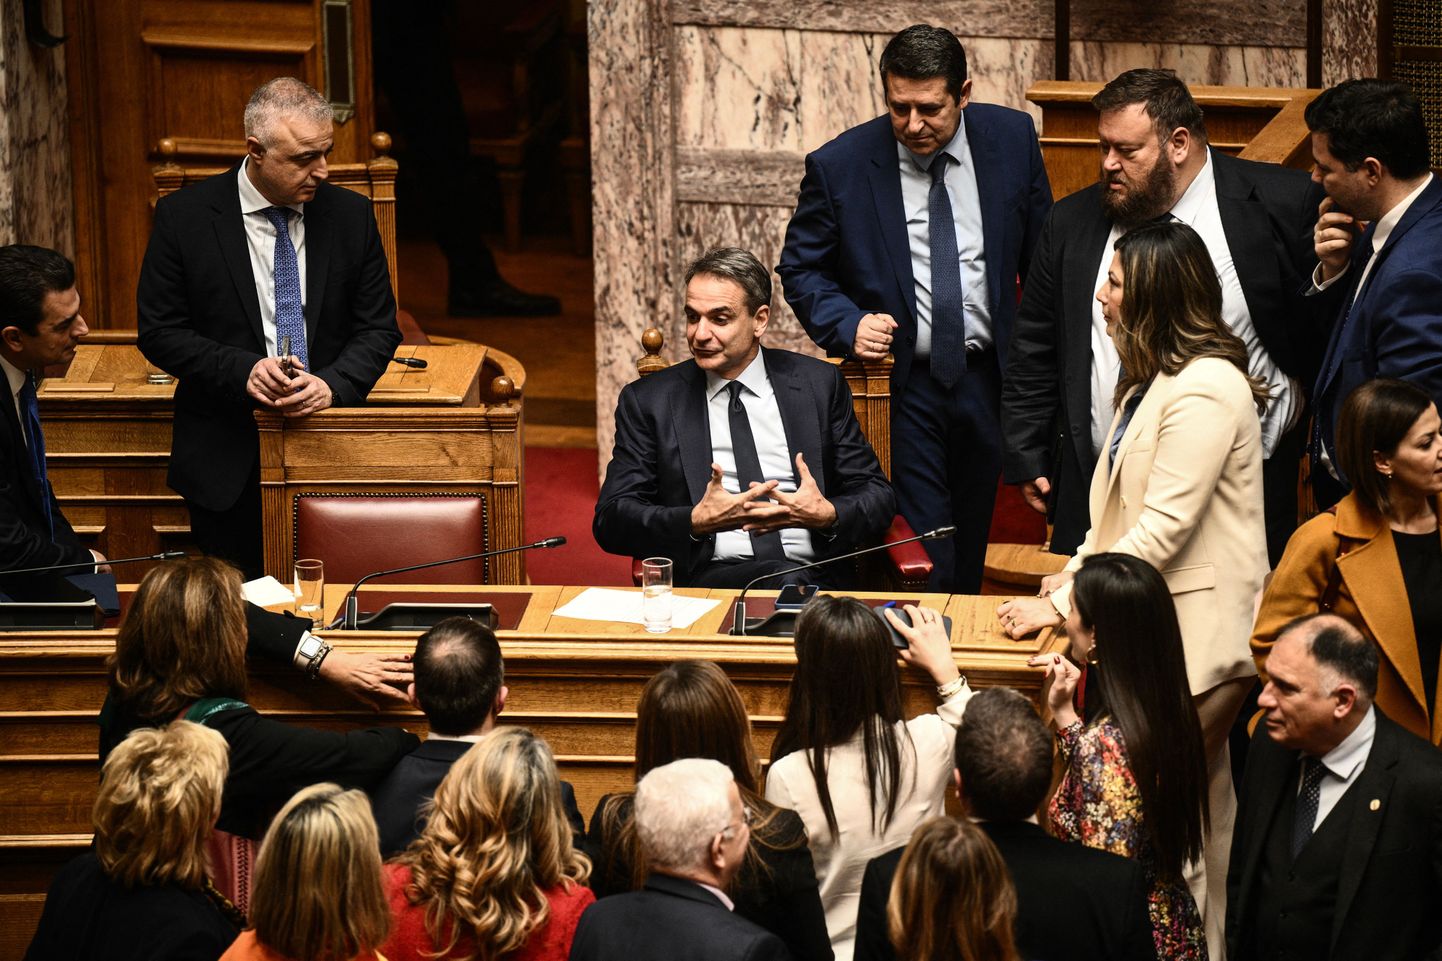 Kreeka peaminister Kyriakos Mitsotakis osales parlamendihääletusel.